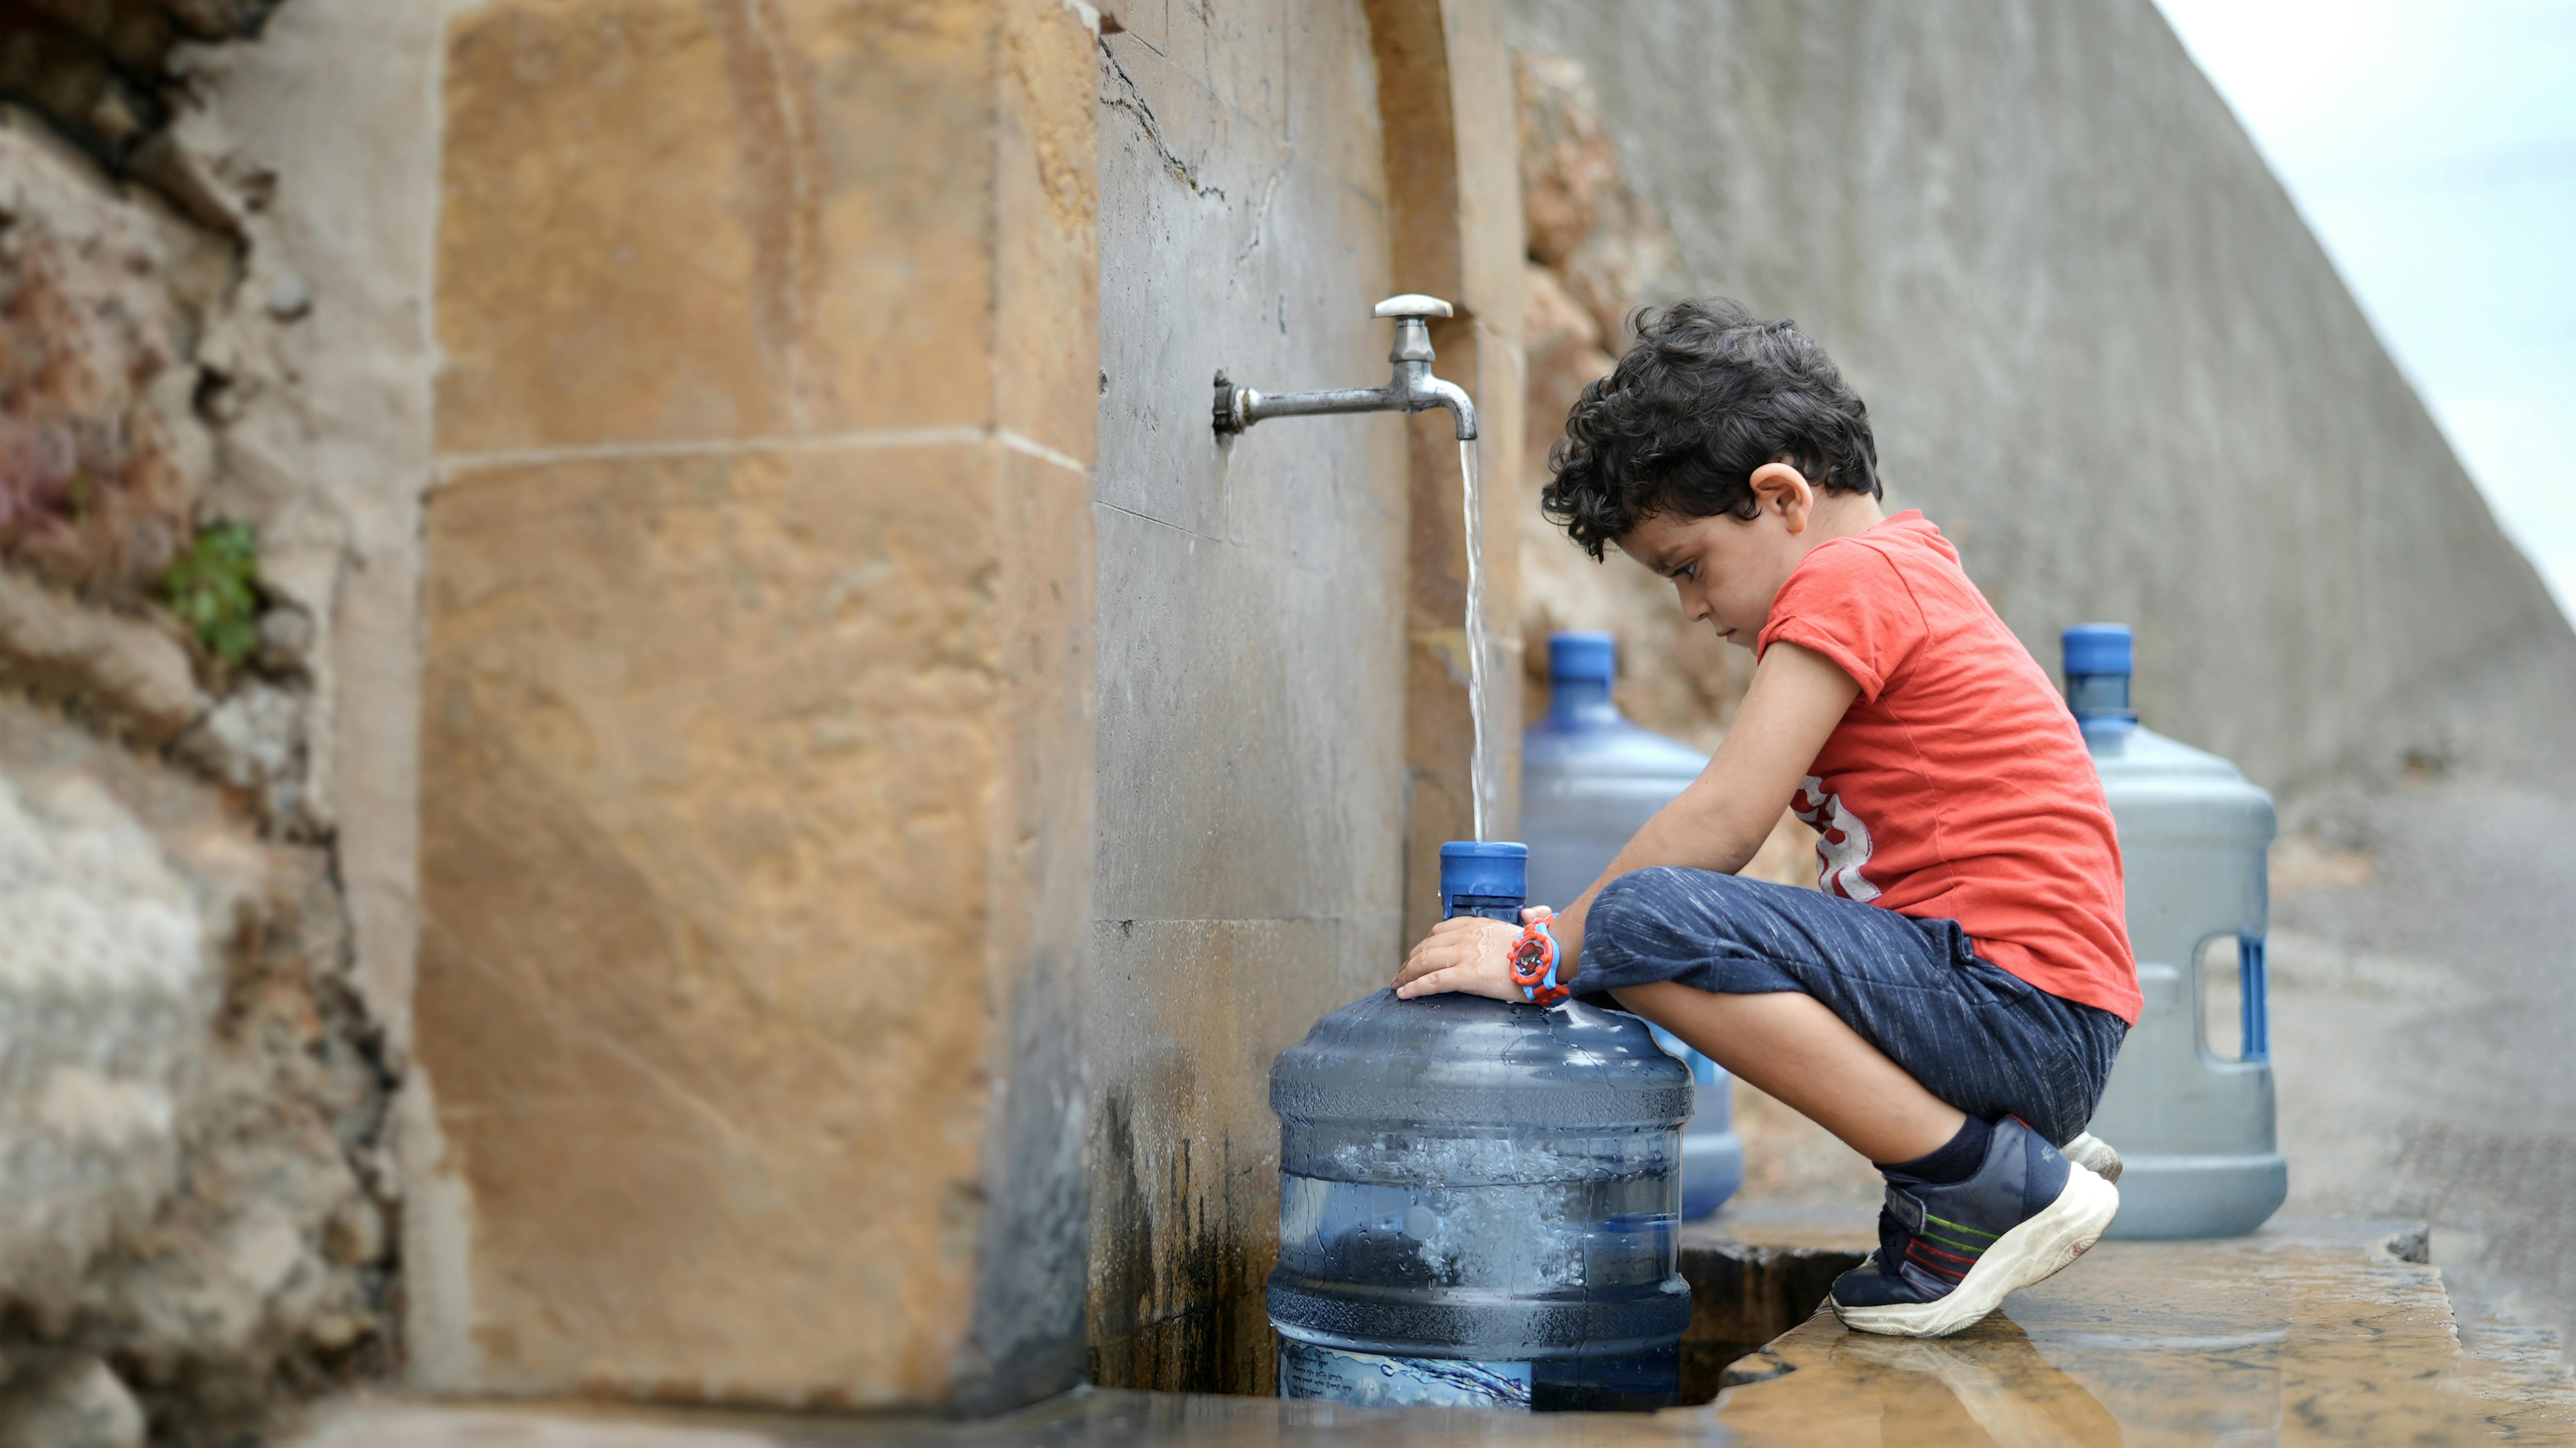 Libano - Georgio, 4 anni, sta aiutando i suoi genitori a riempire i loro piccoli contenitori perché non hanno acqua in casa.